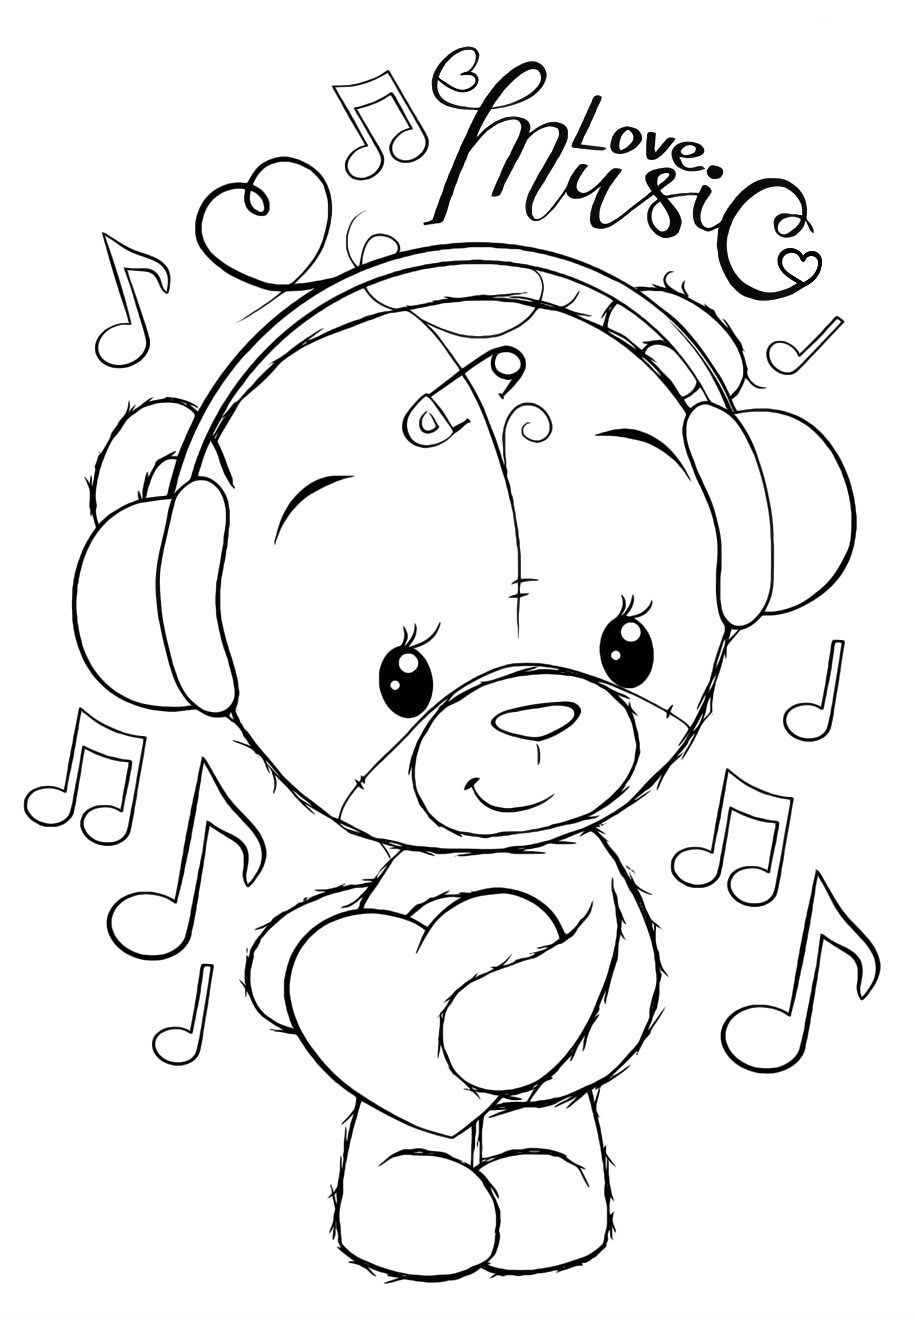 Раскраски для девочек «Милашки» Мишка Тедди любит музыку, чтобы бесплатно распечатать в хорошем качестве А4